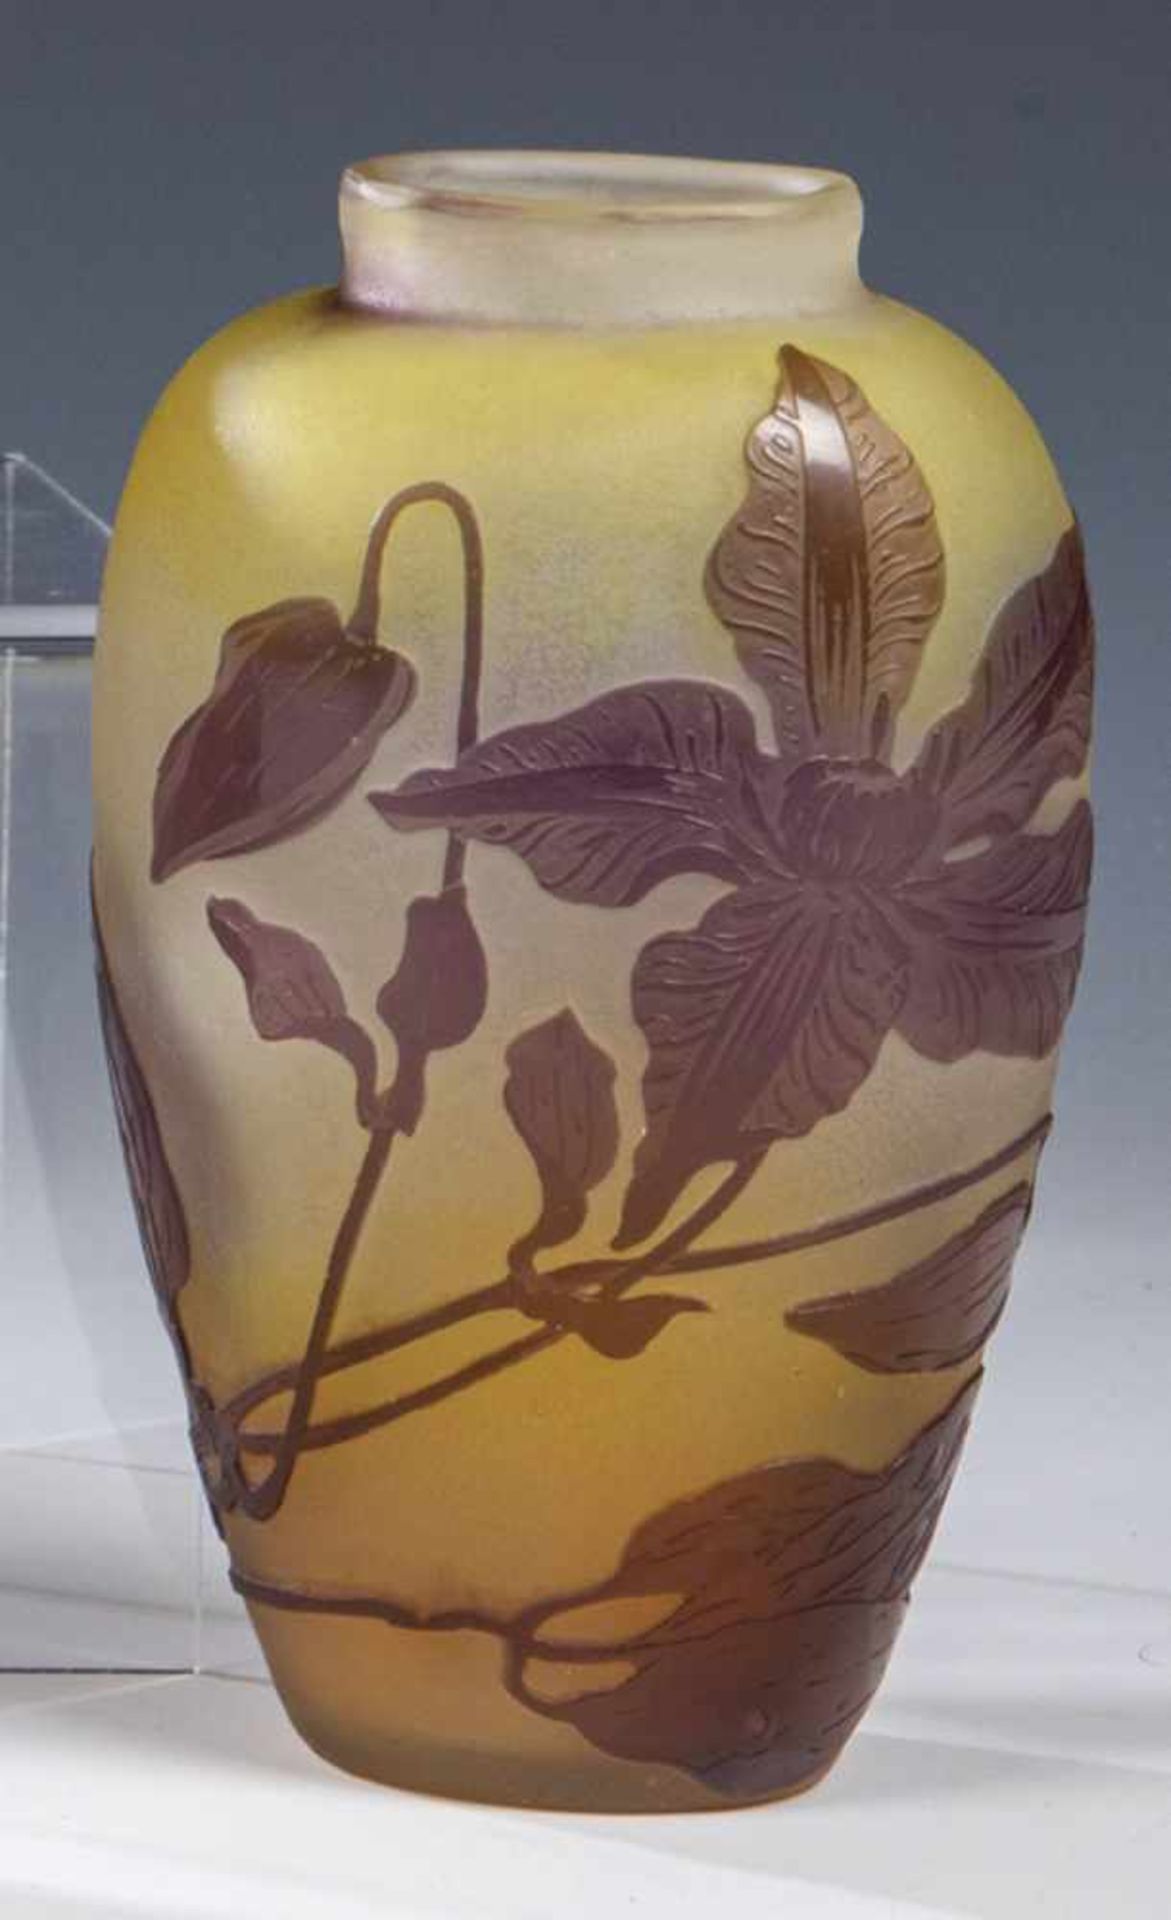 Vase mit Clematis